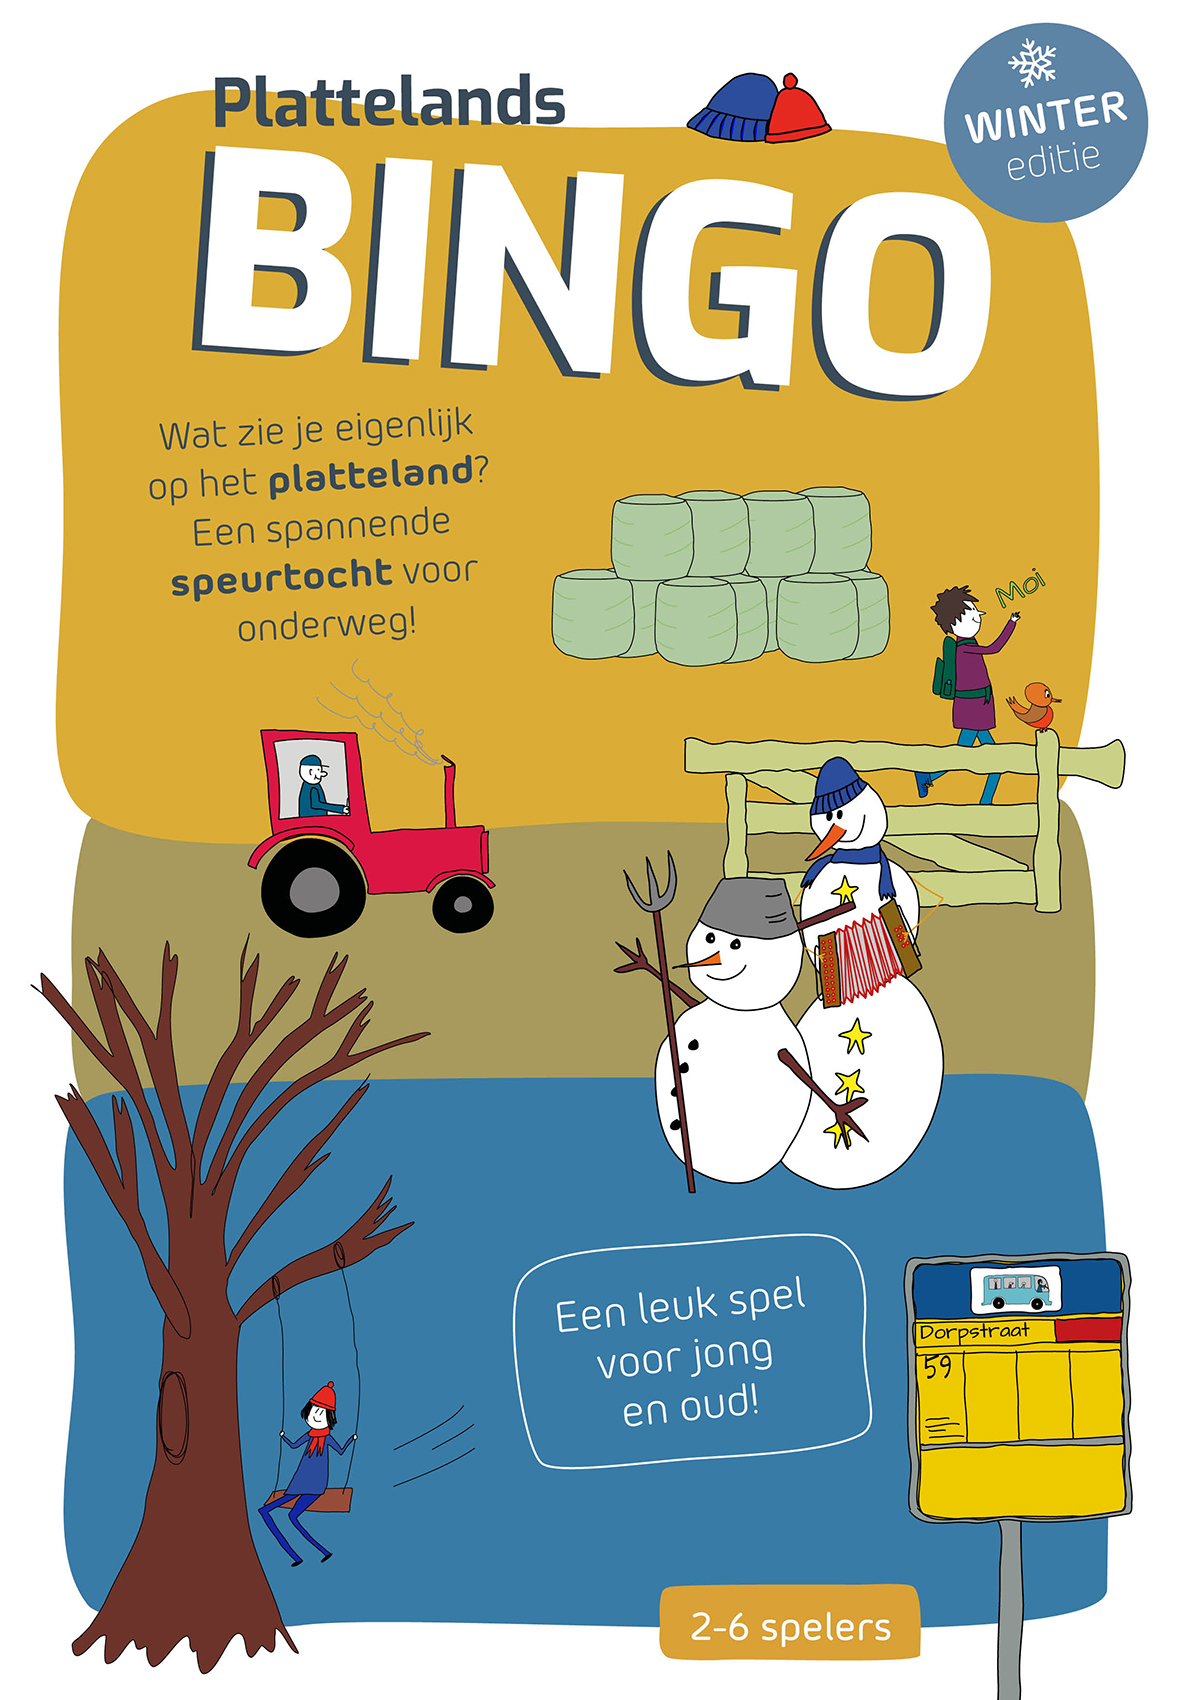 Plattelands bingo wintereditie ontwerp door JantyDesign